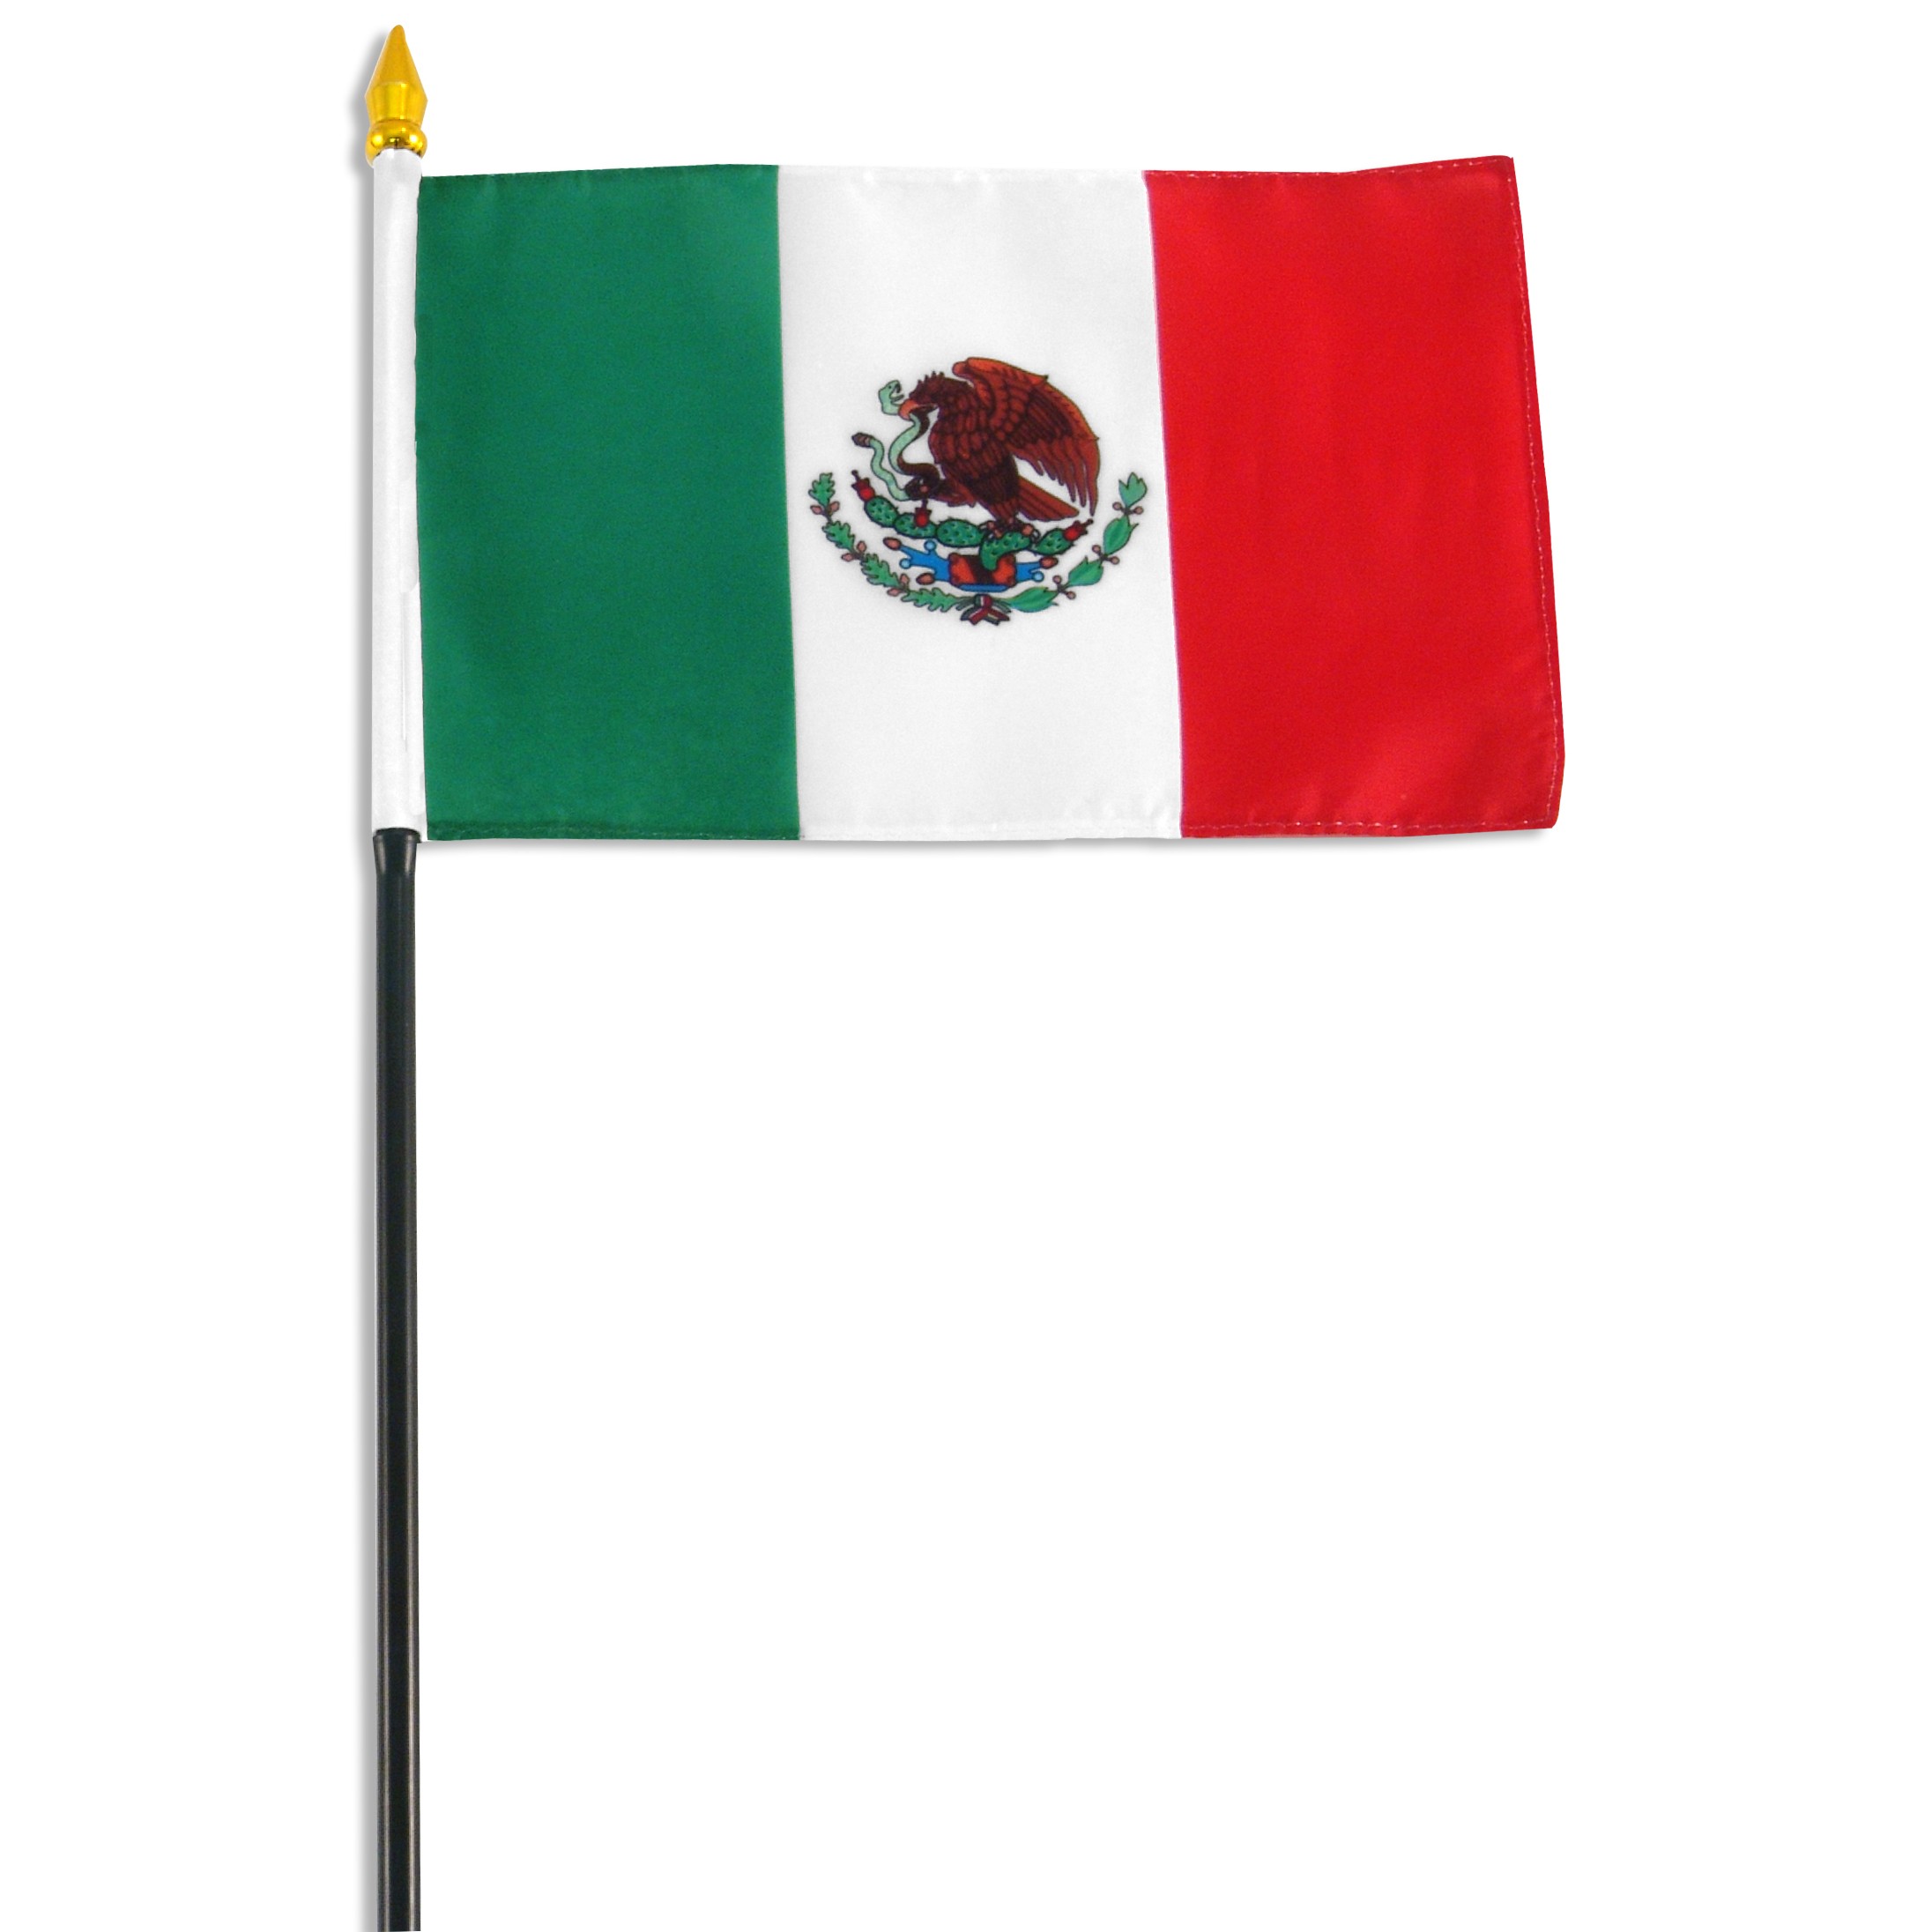 Mexico (Mexican) Flag - Flag of Mexico